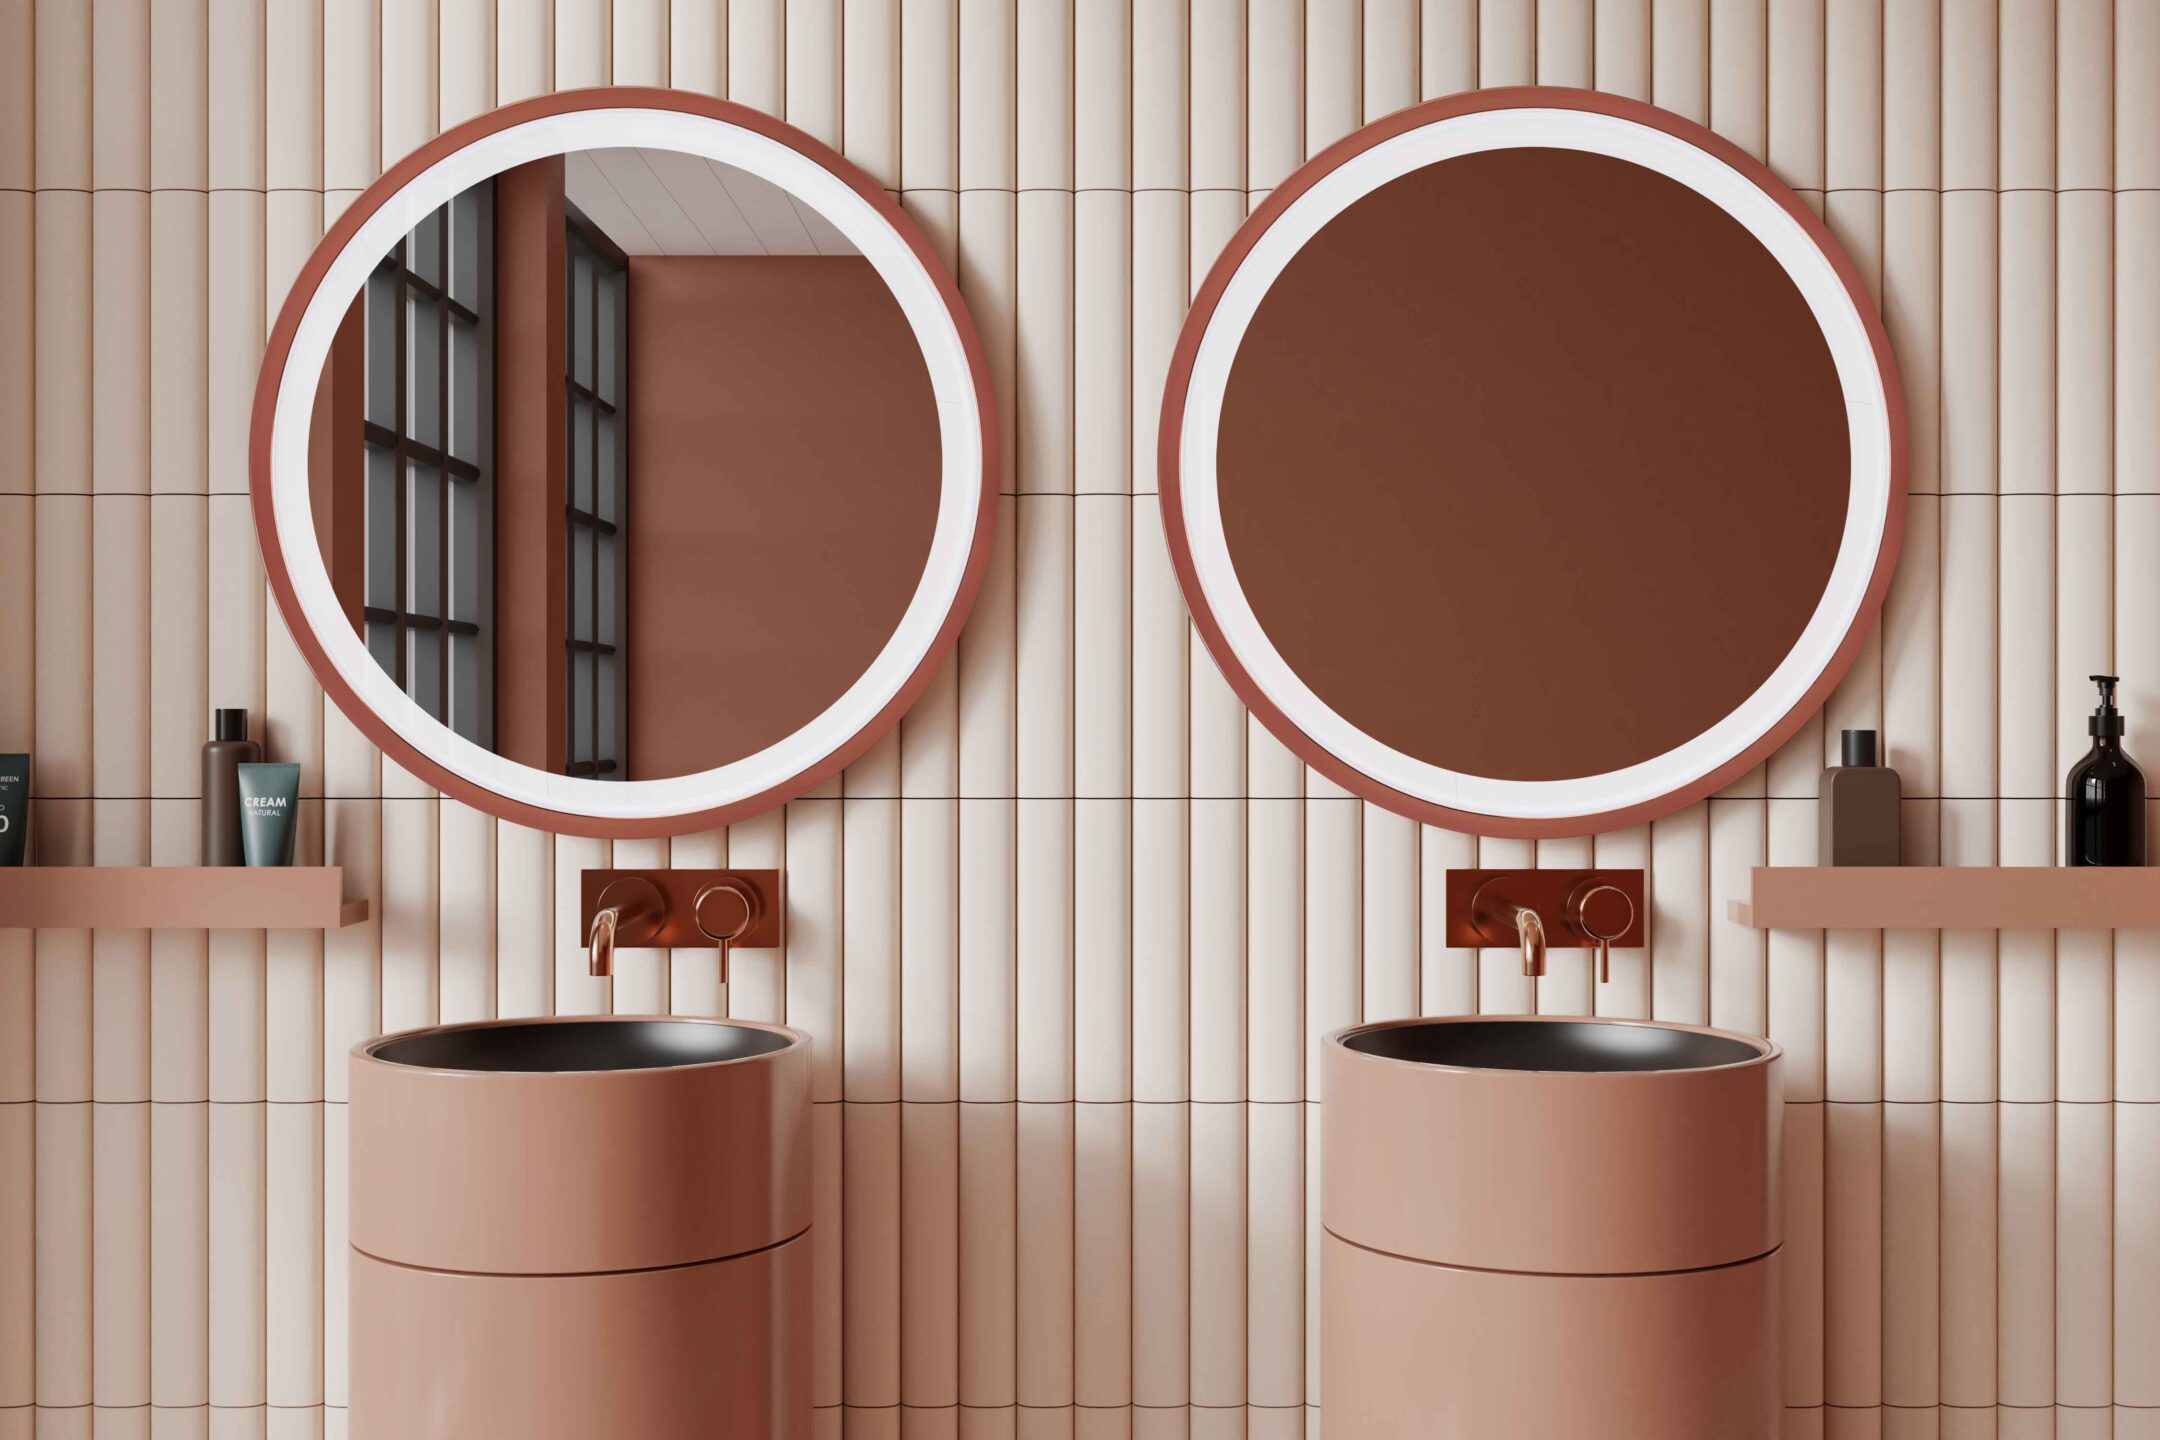 dwa lustra ring w miedzianej ramie nad okraglymi wolnostojacymi umywalkami